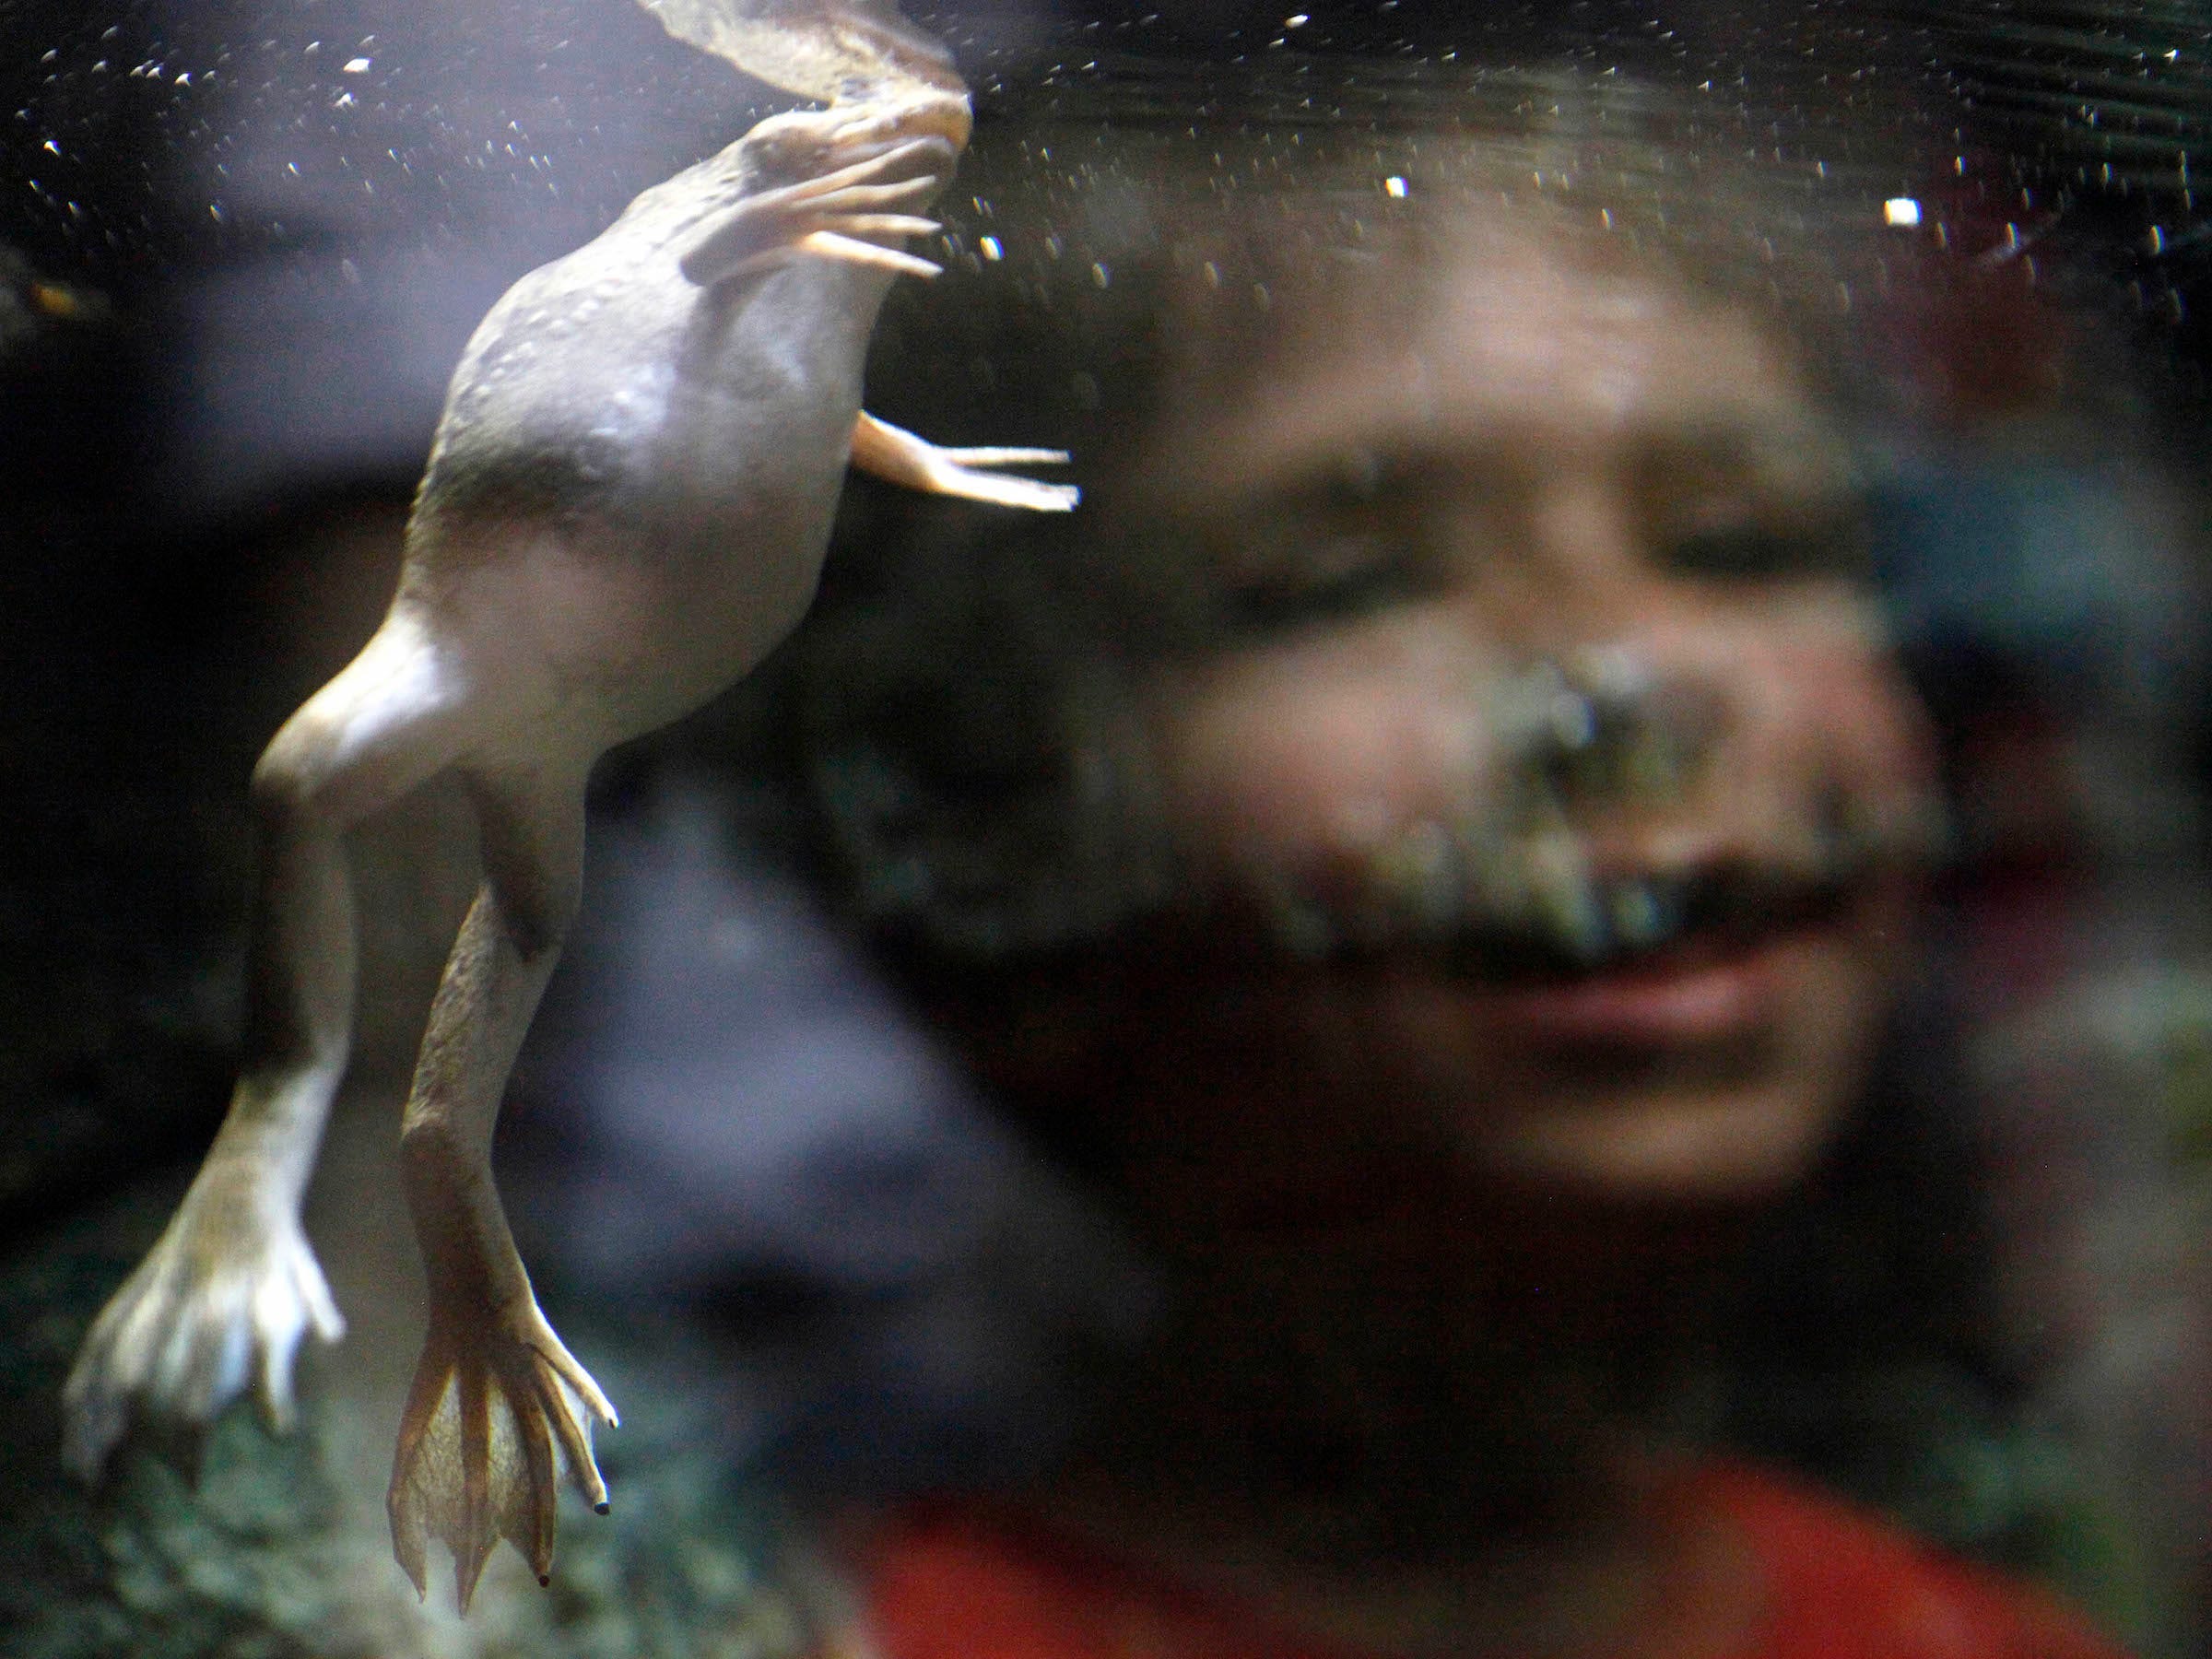 Afrikanischer Krallenfrosch, der im Tank schwimmt, während der kleine Junge zuschaut